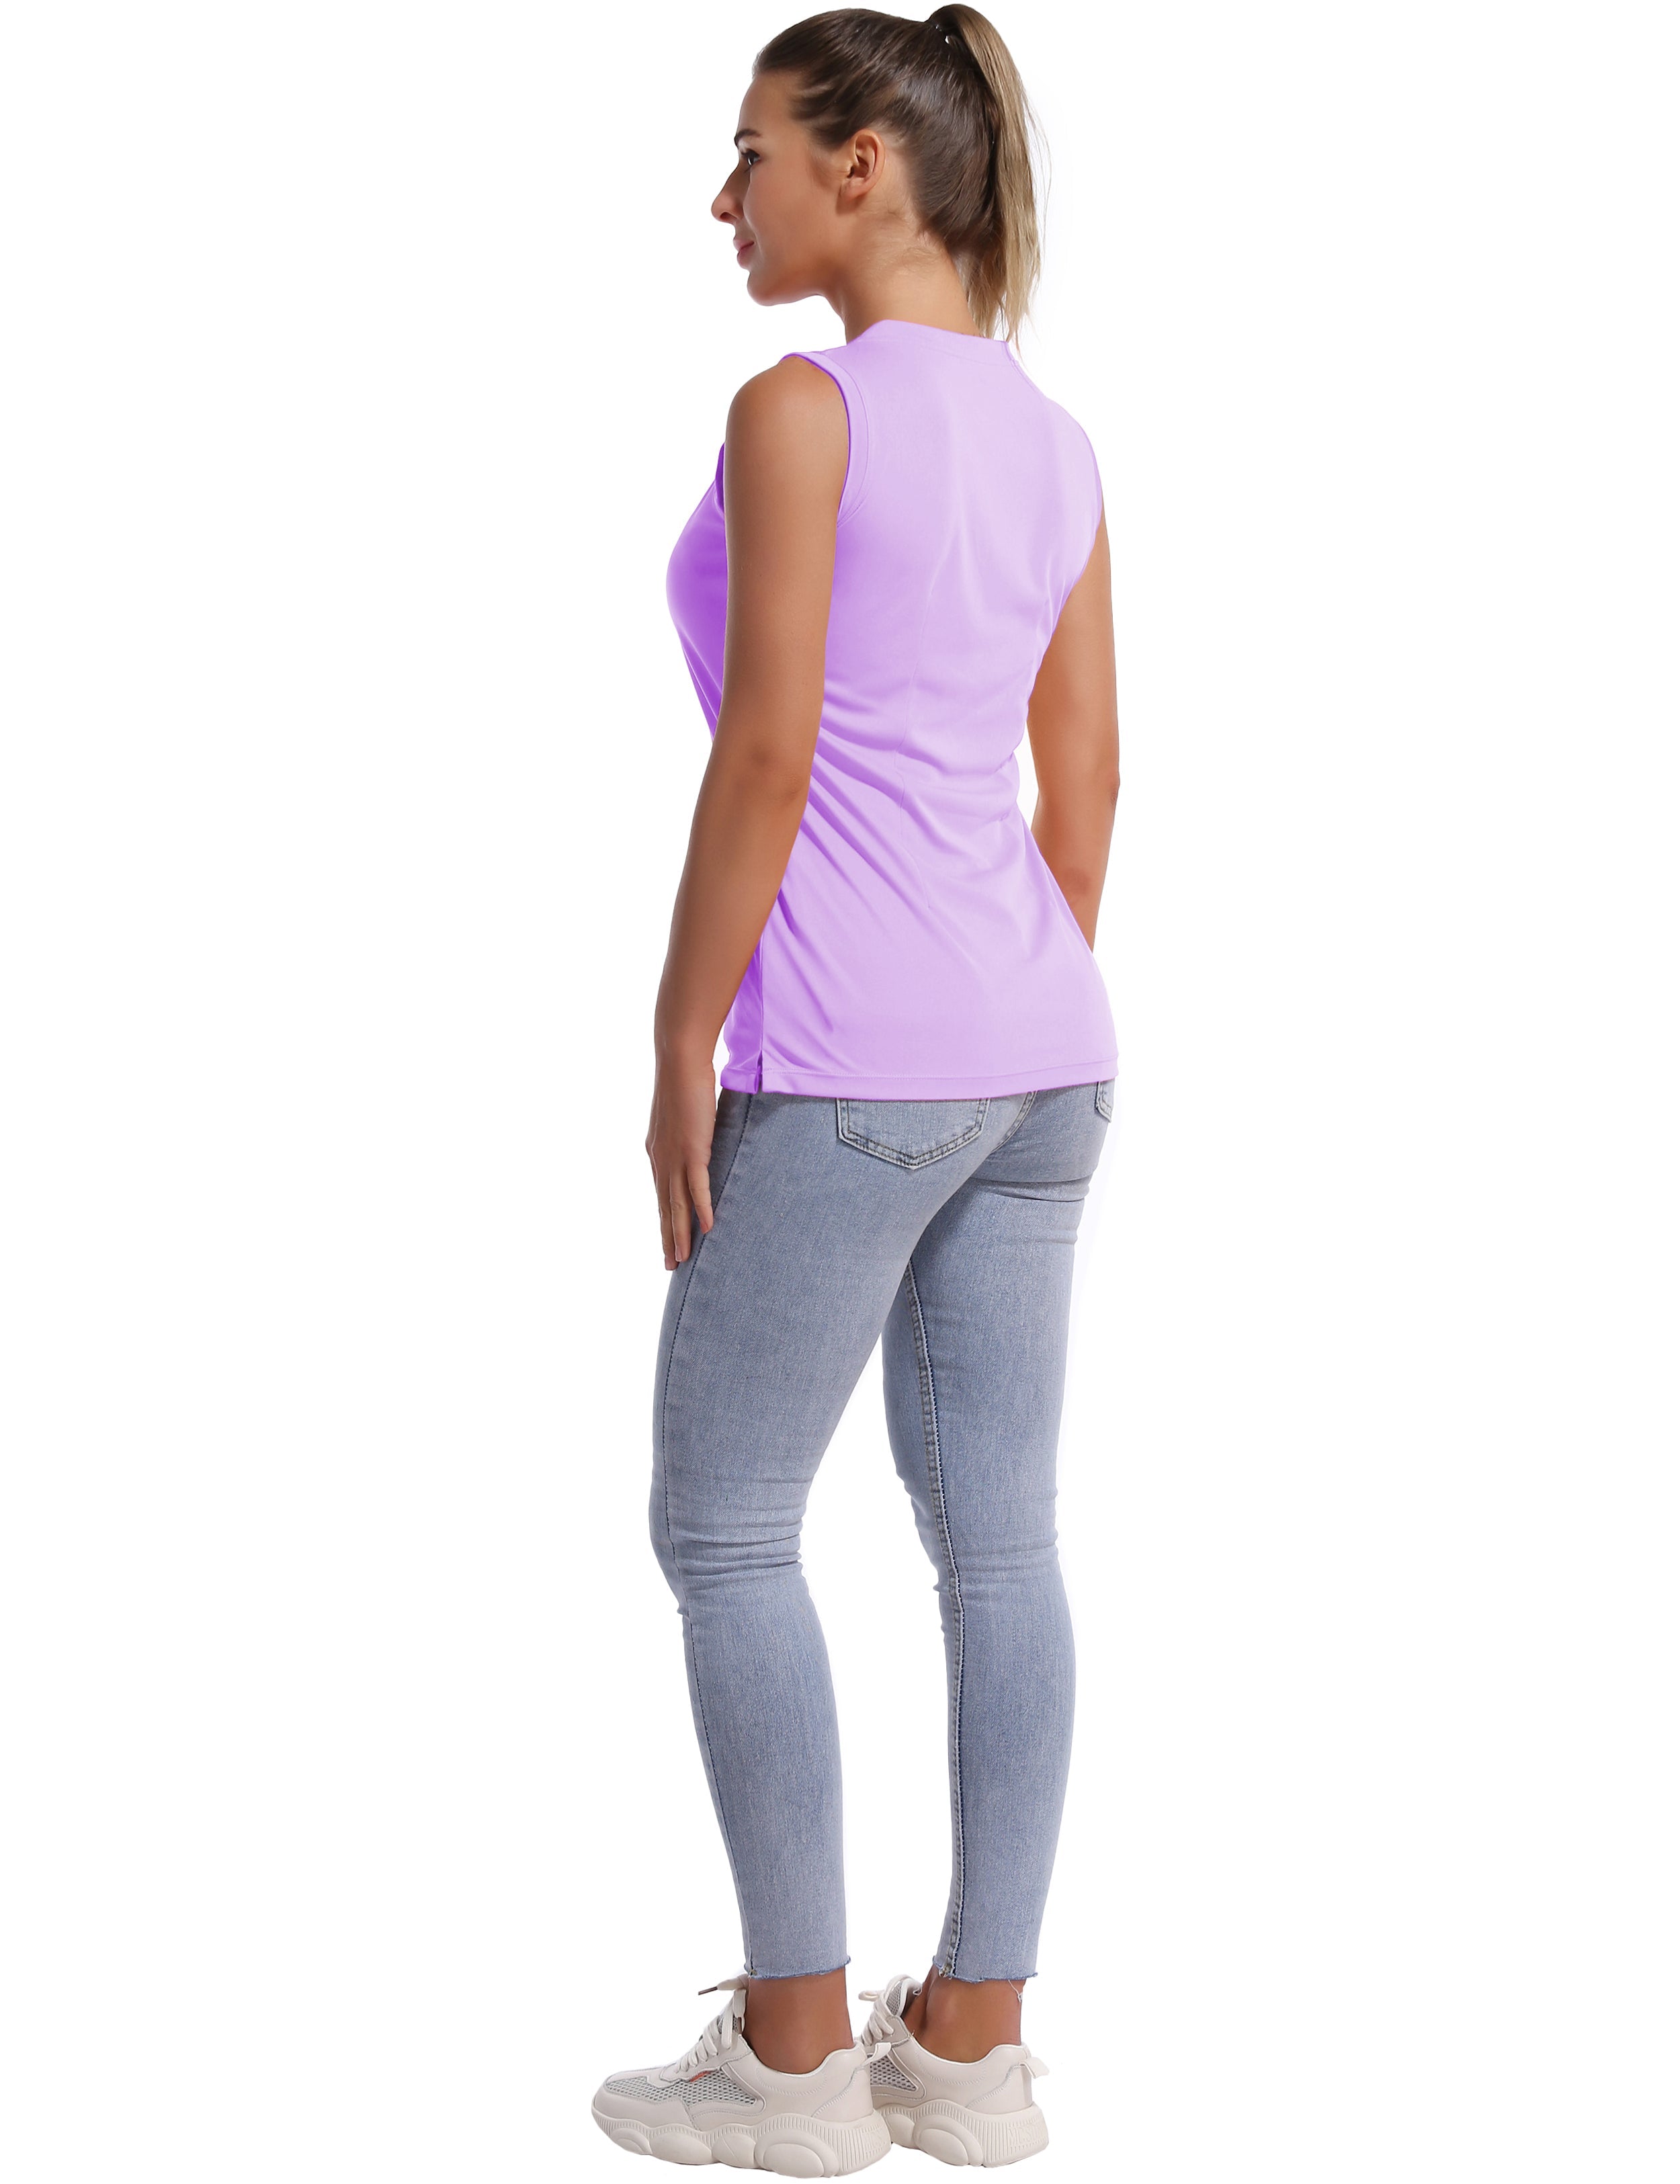 V Neck Sleeveless Athletic Shirts purple_Running